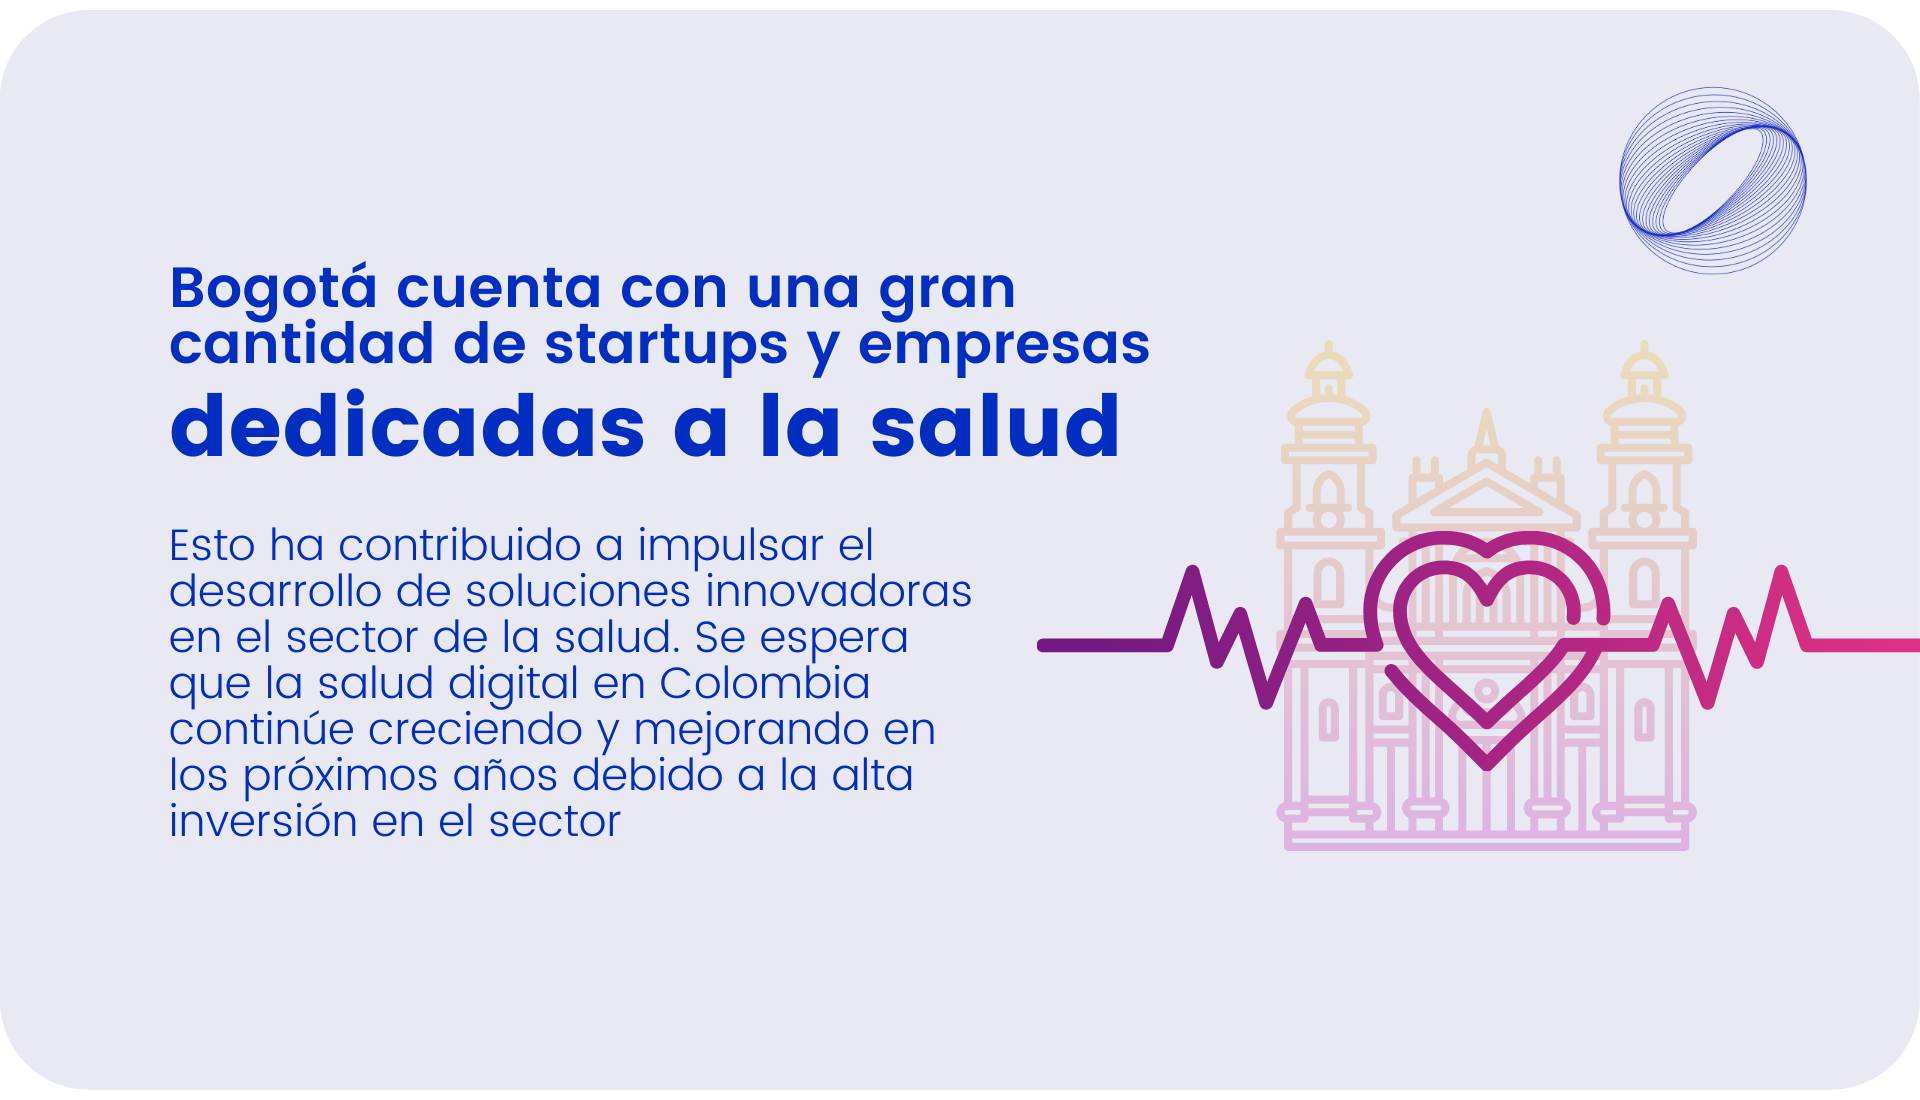 Bogotá cuenta con una gran cantidad de startups y empresas dedicadas a la salud